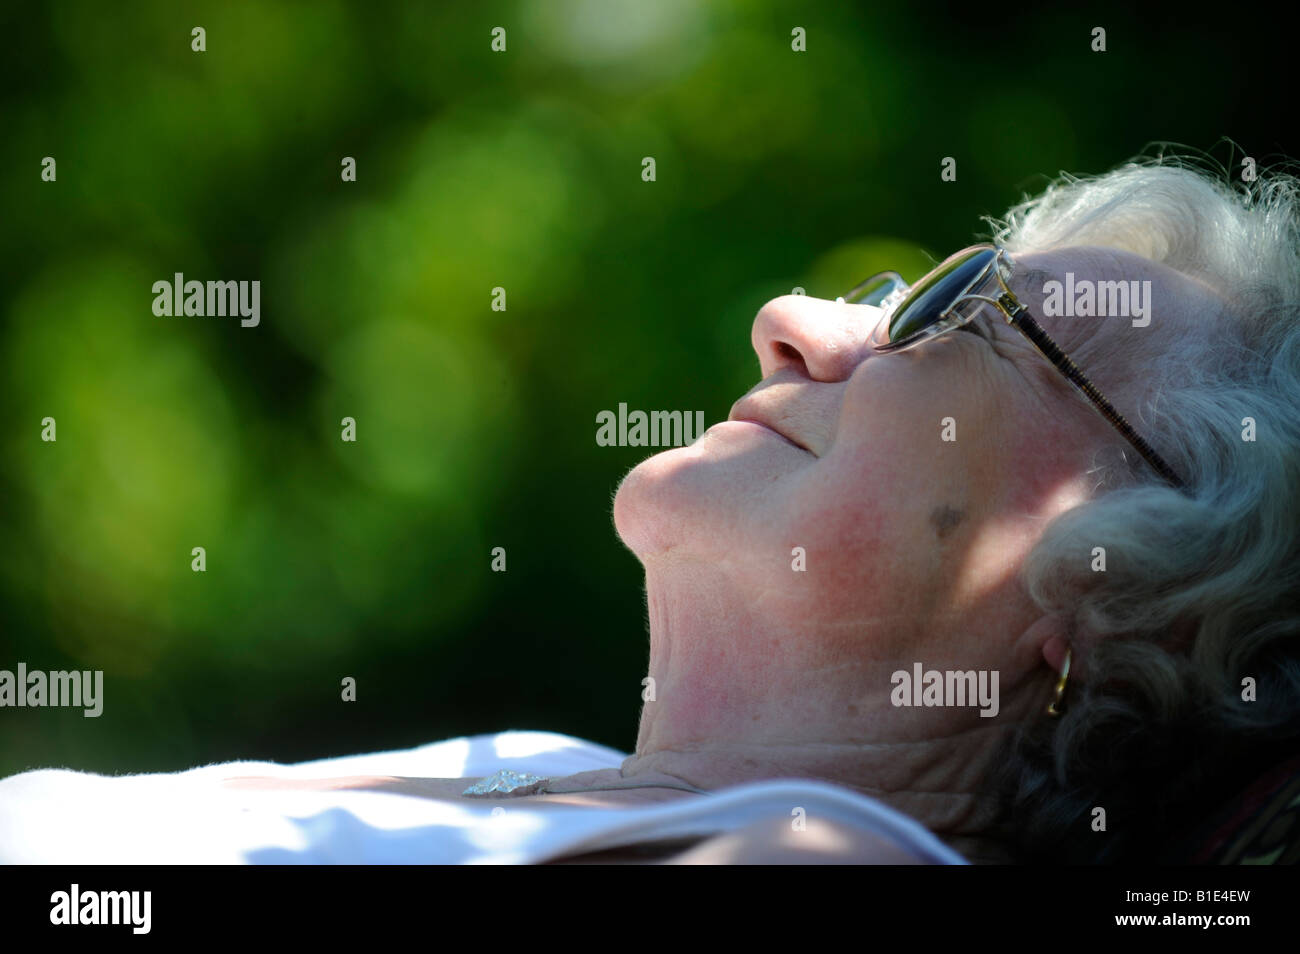 Una signora inglese titolare di pensione o di rendita OAP gode di pensionamento in una giornata di sole a prendere il sole,UK,Inghilterra. Foto Stock